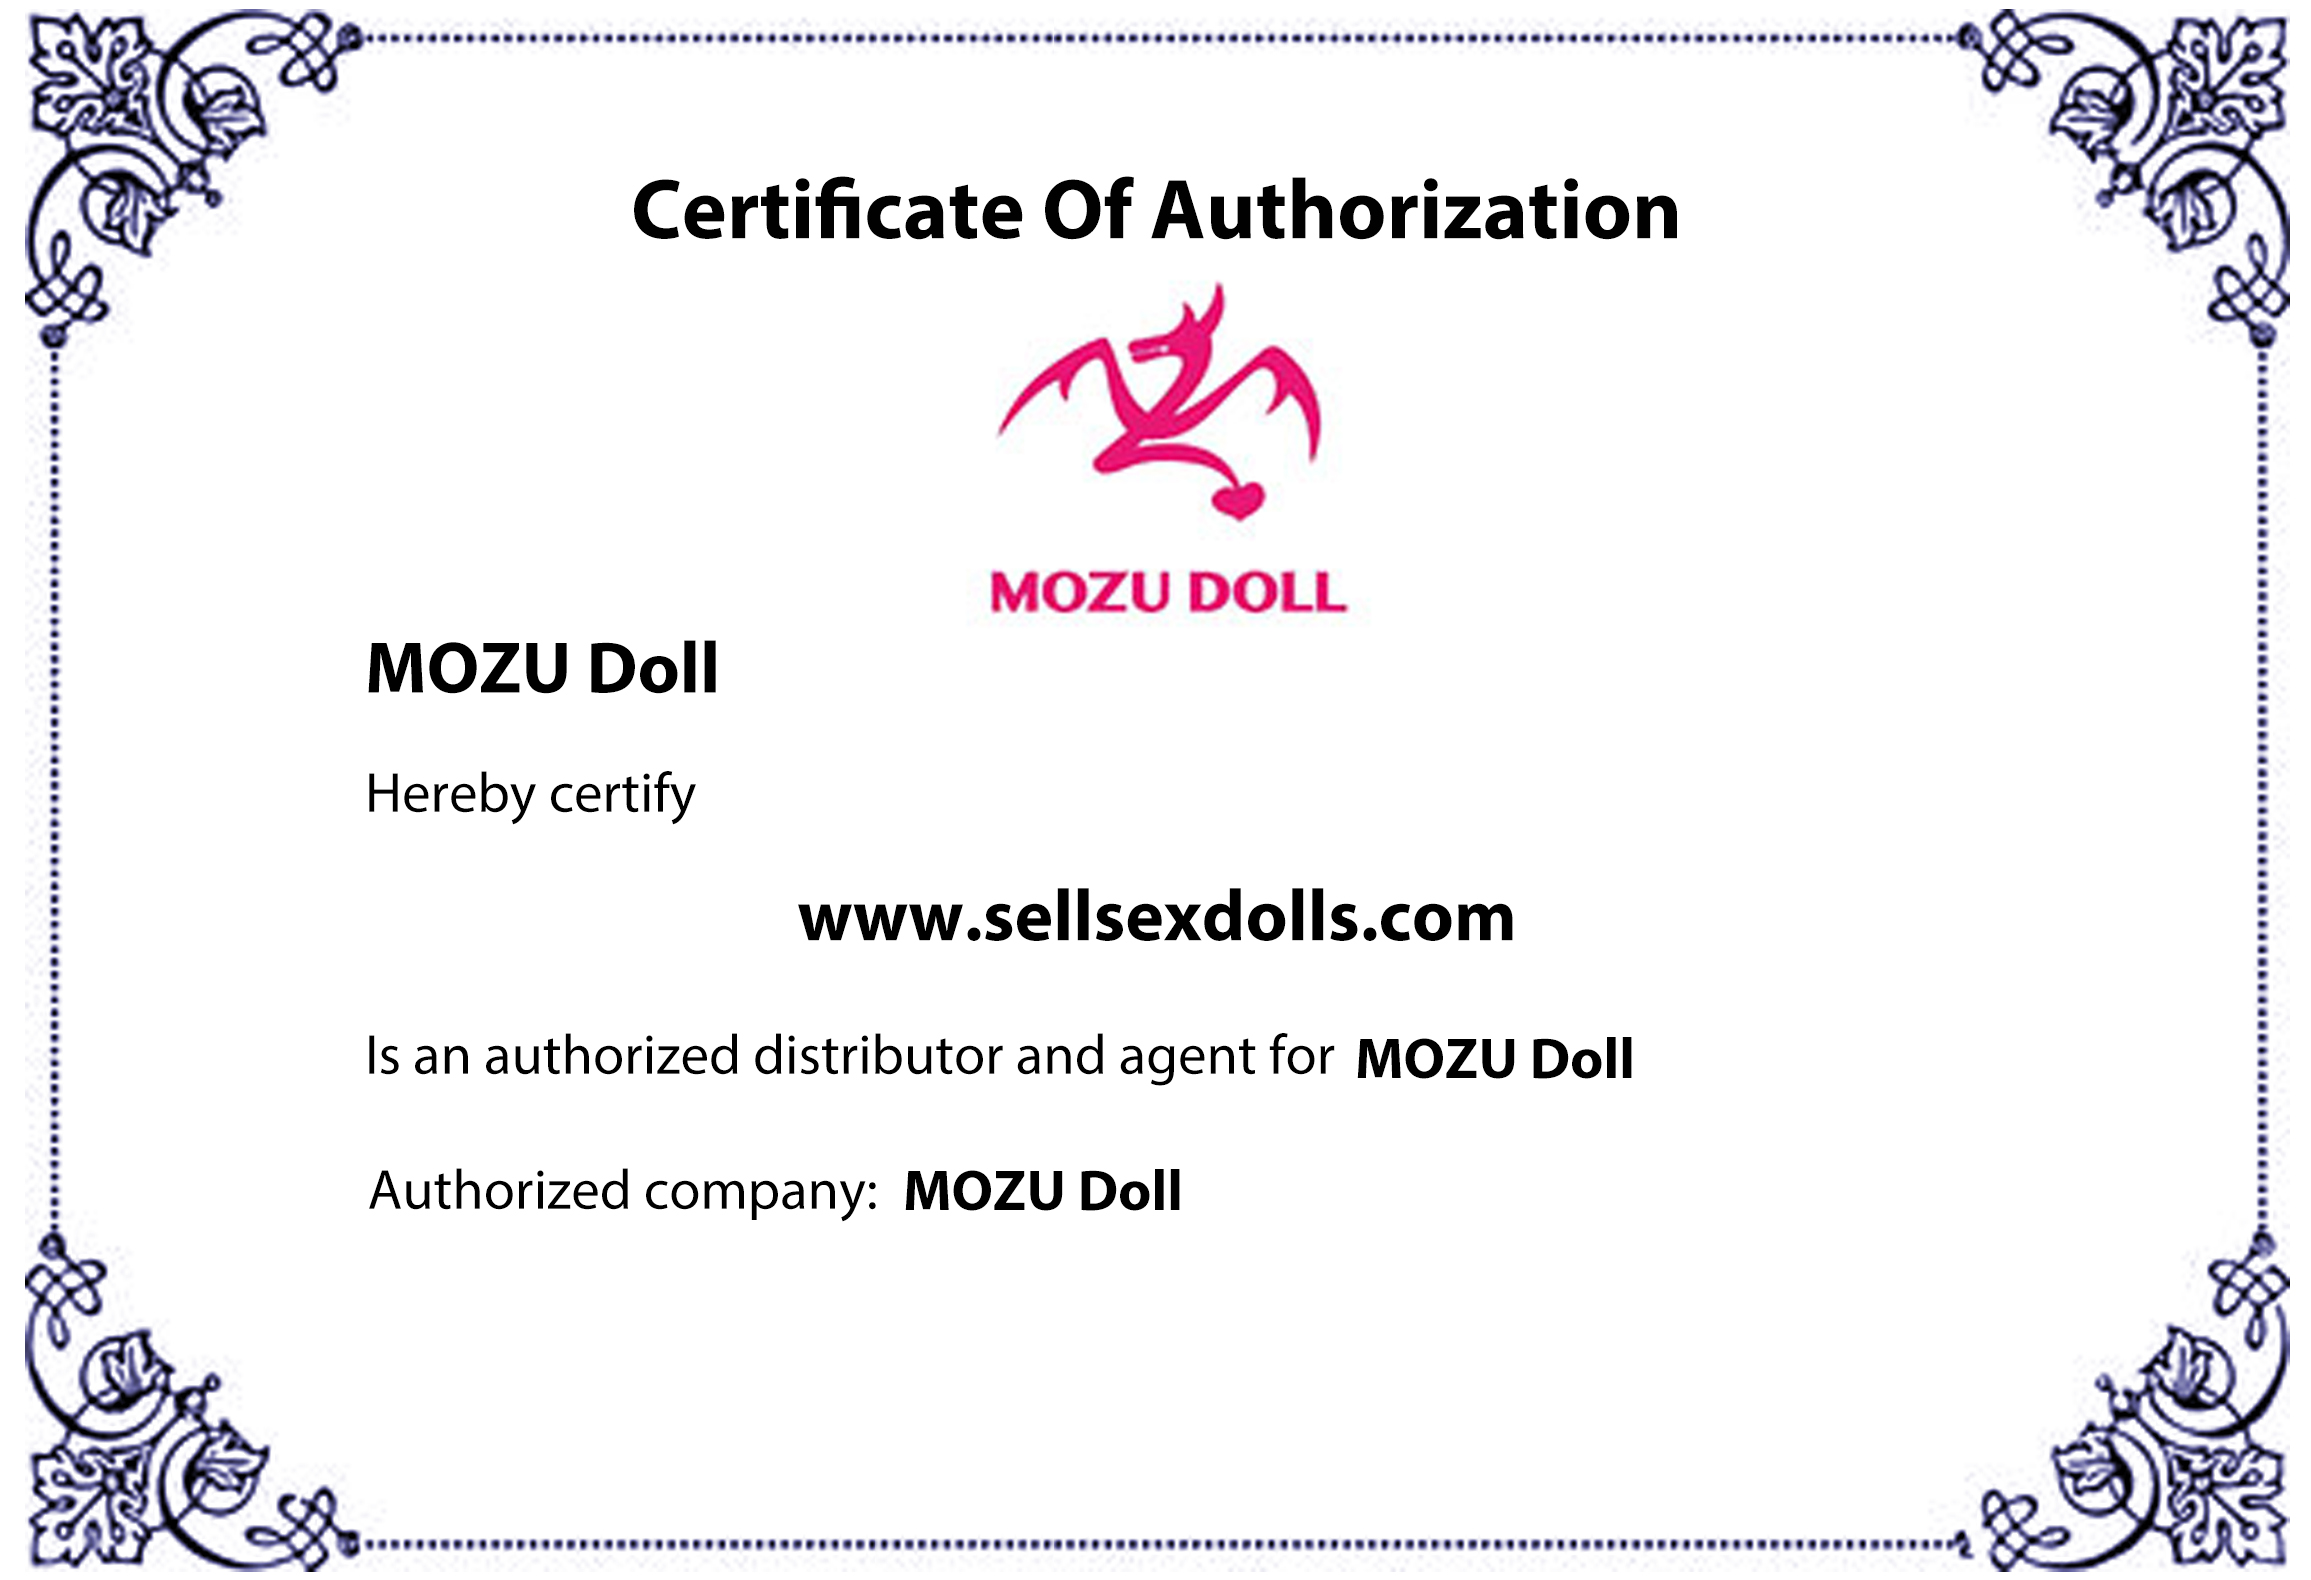 mozu doll certificate